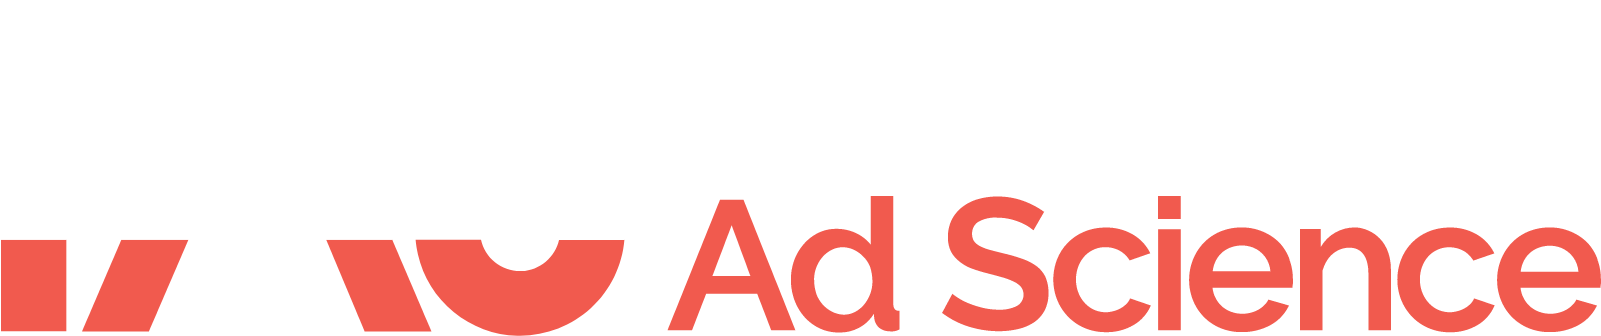 Integral Ad Science logo grand pour les fonds sombres (PNG transparent)